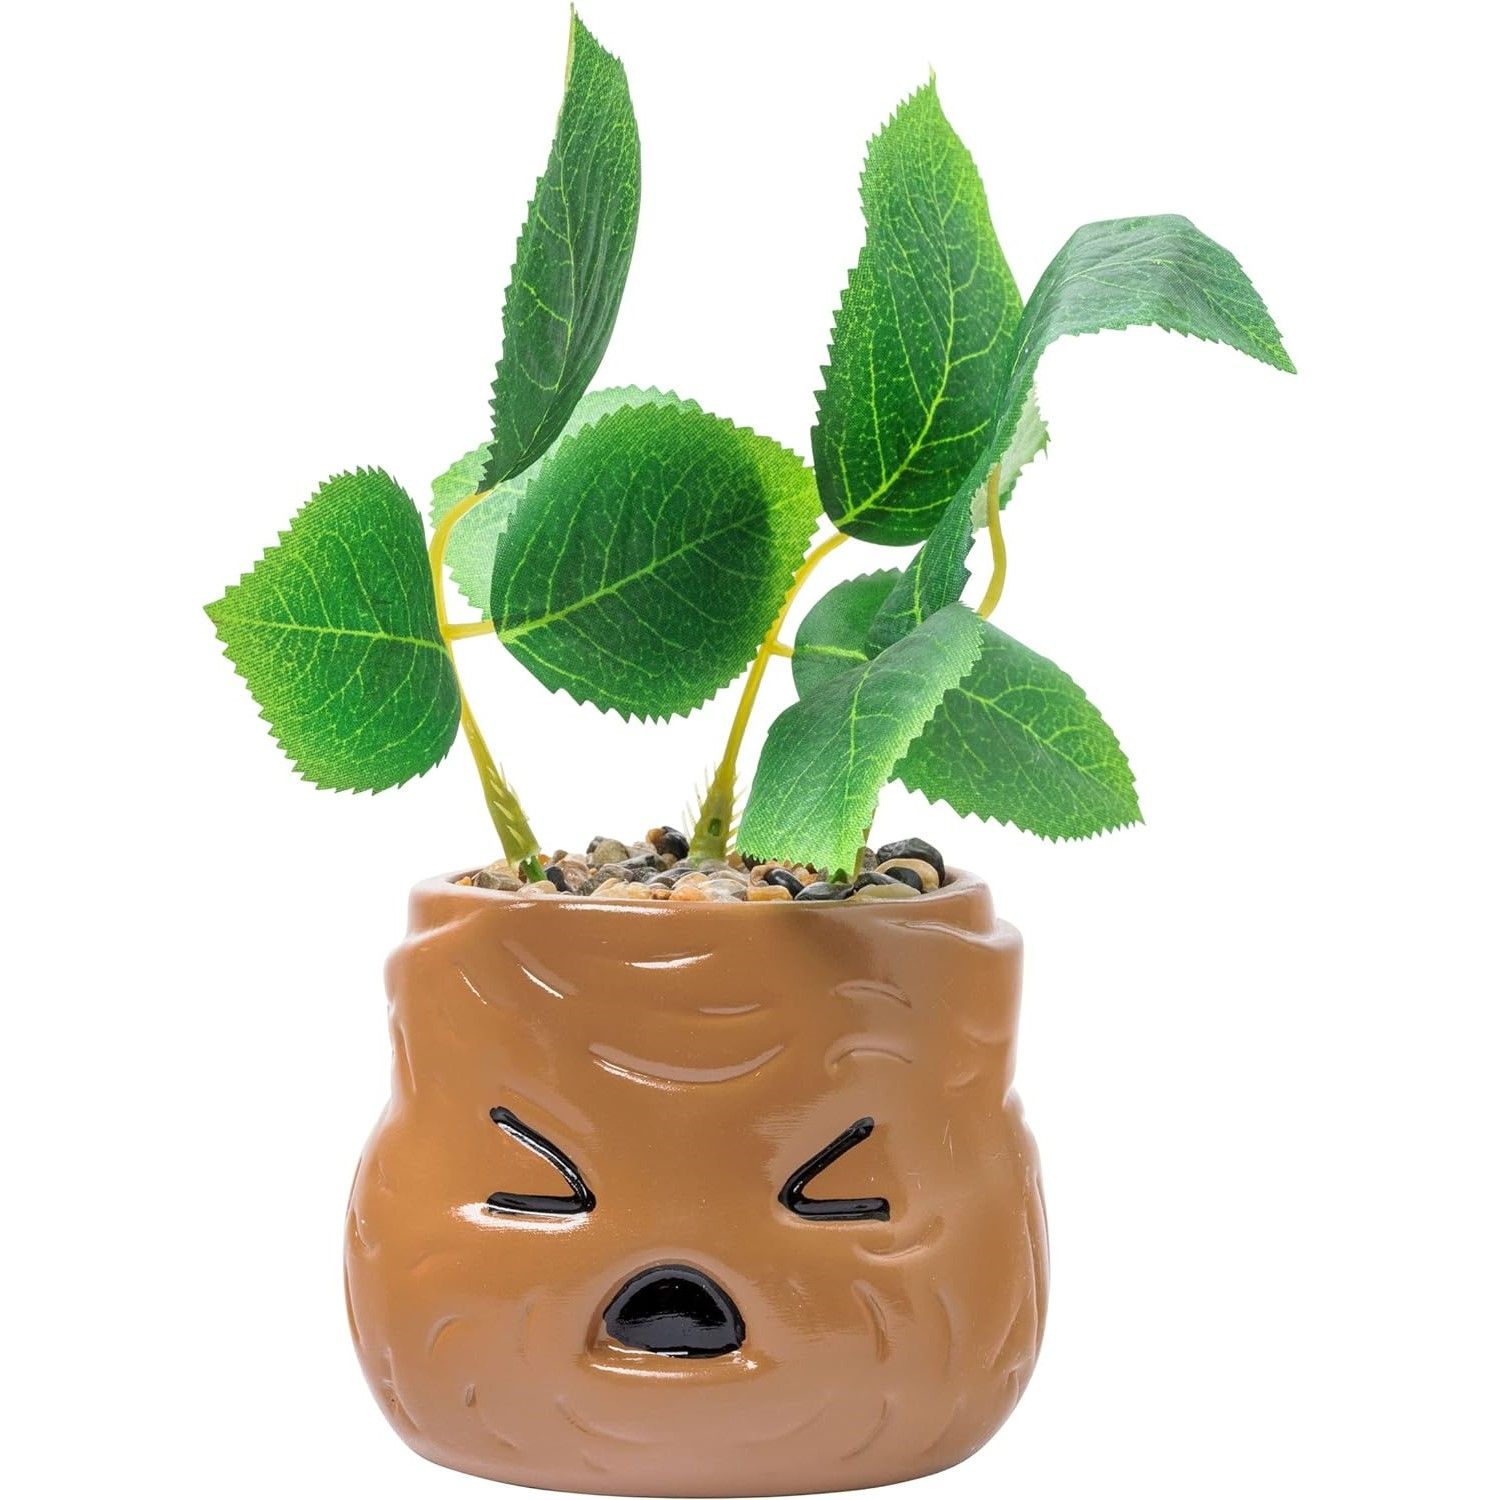 Ceramic Mandrake Succulent Planter